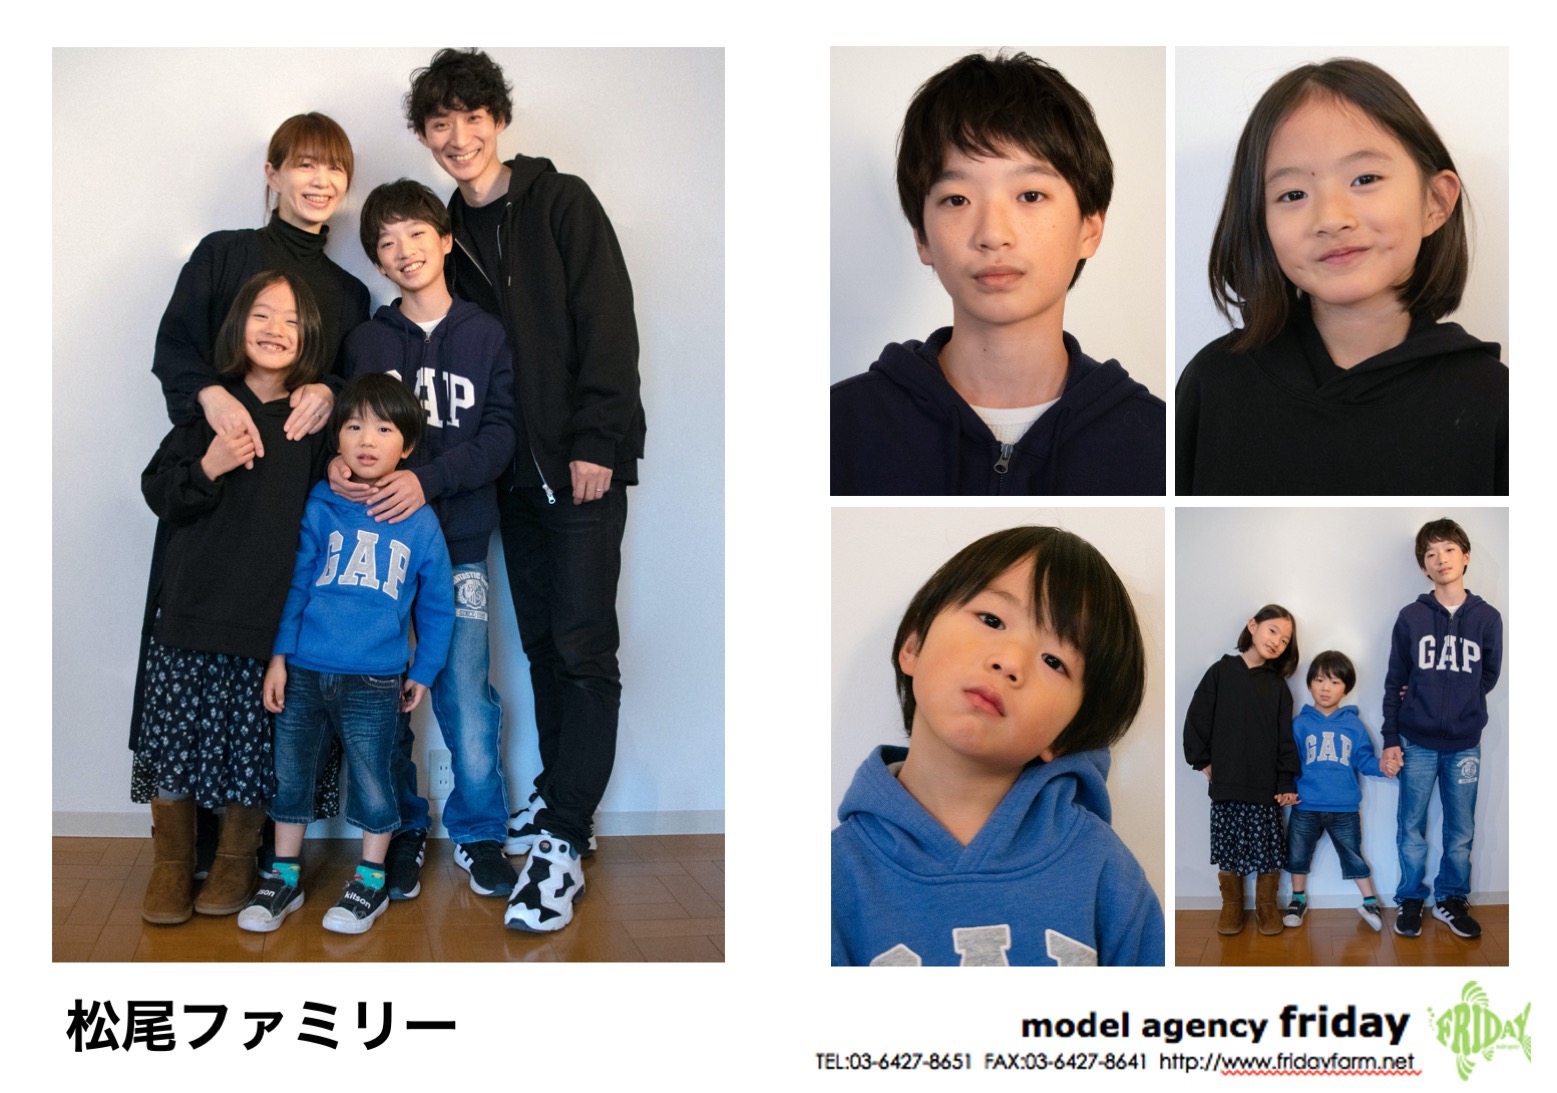 松尾ファミリー - Matsuo Family | model agency friday